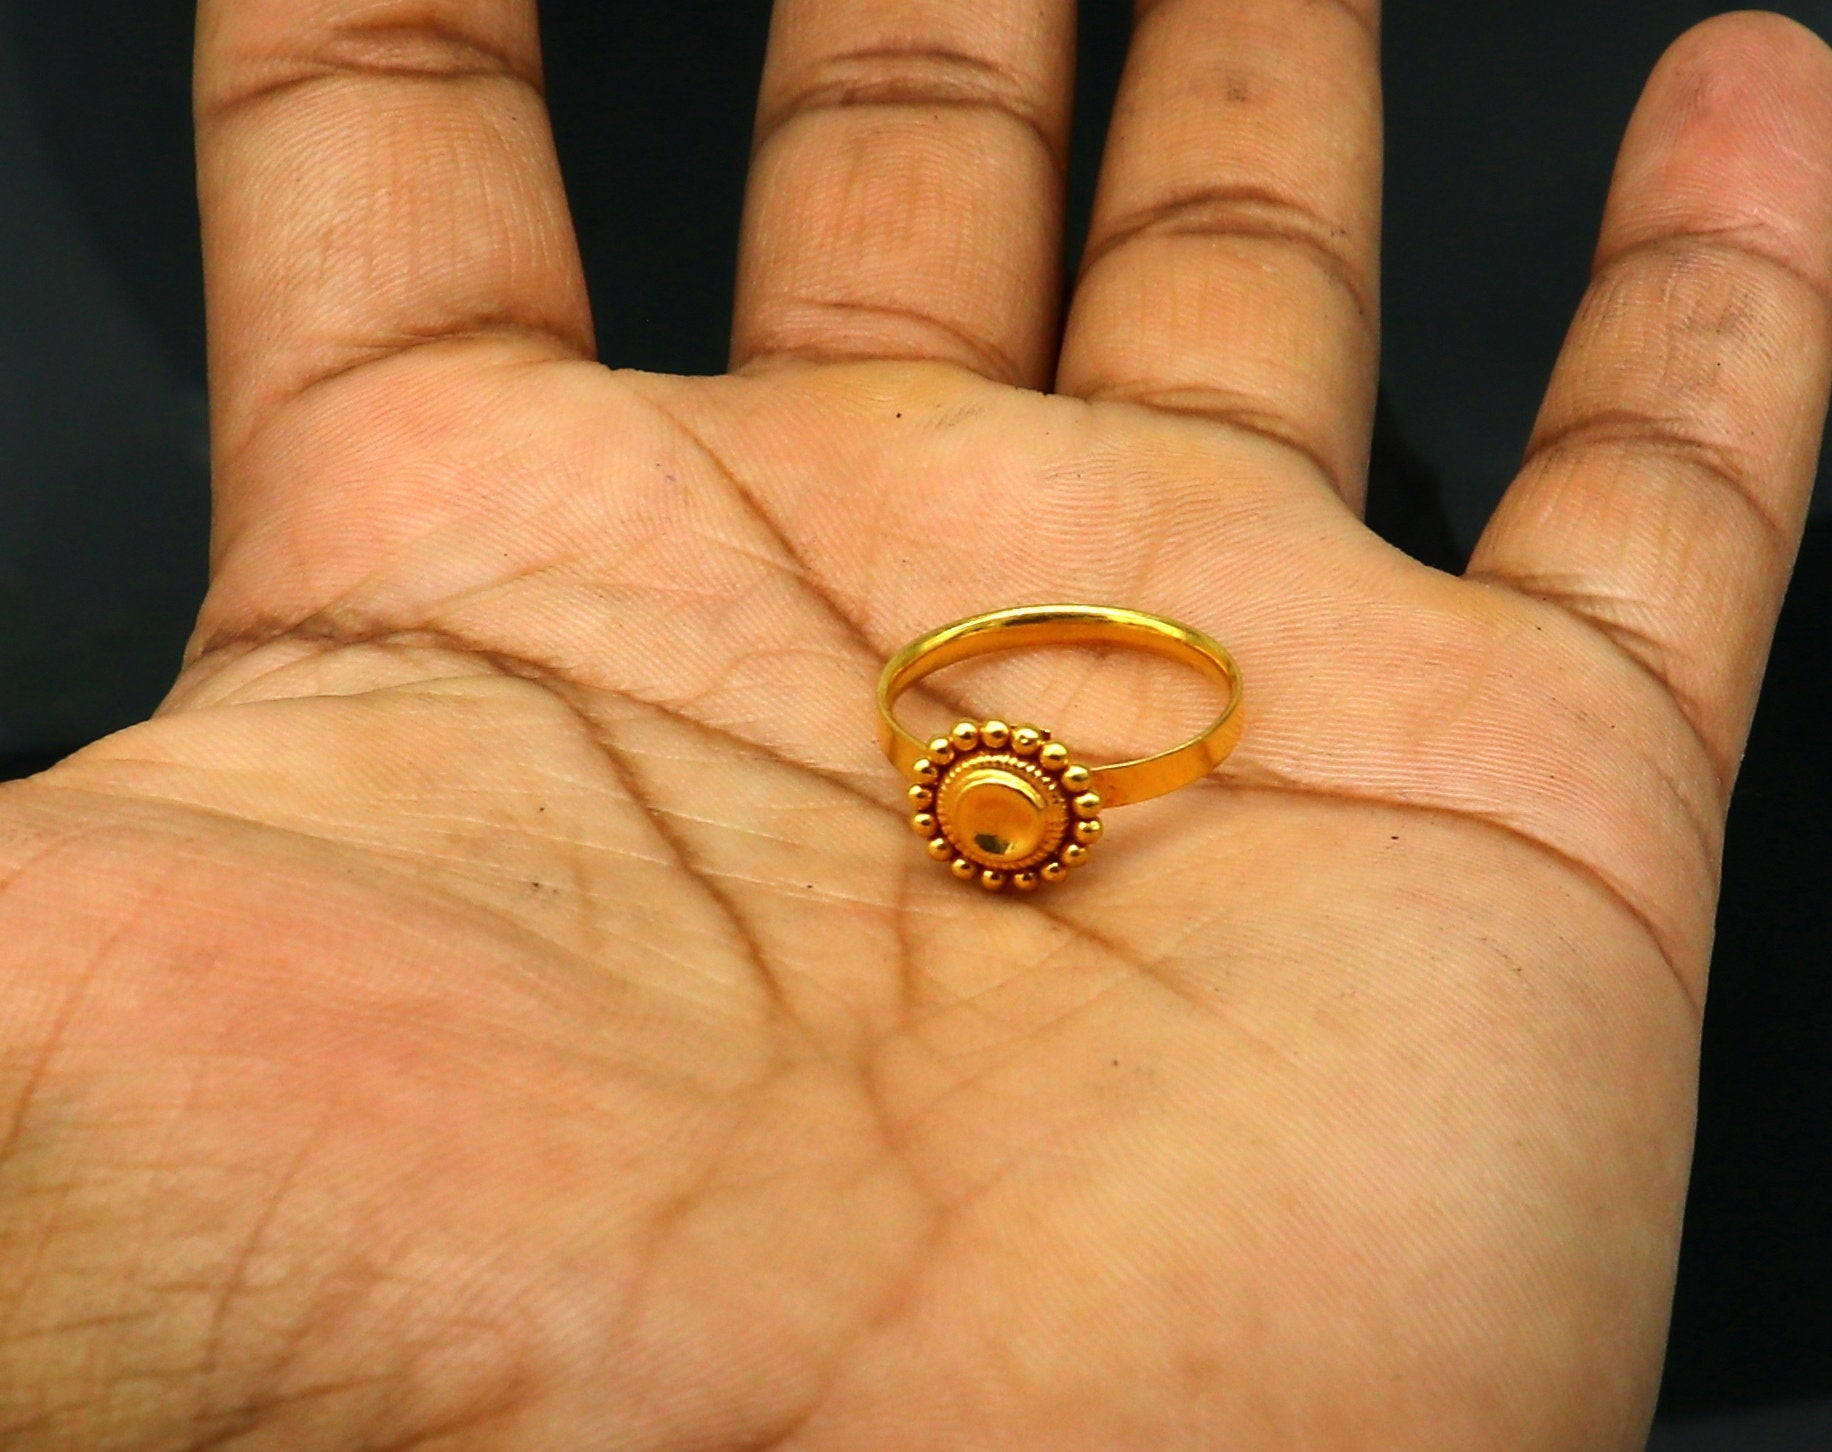 ये खास Gold Ring Designs खूब जचेंगे आपके हाथों पर, मॉडर्न ..